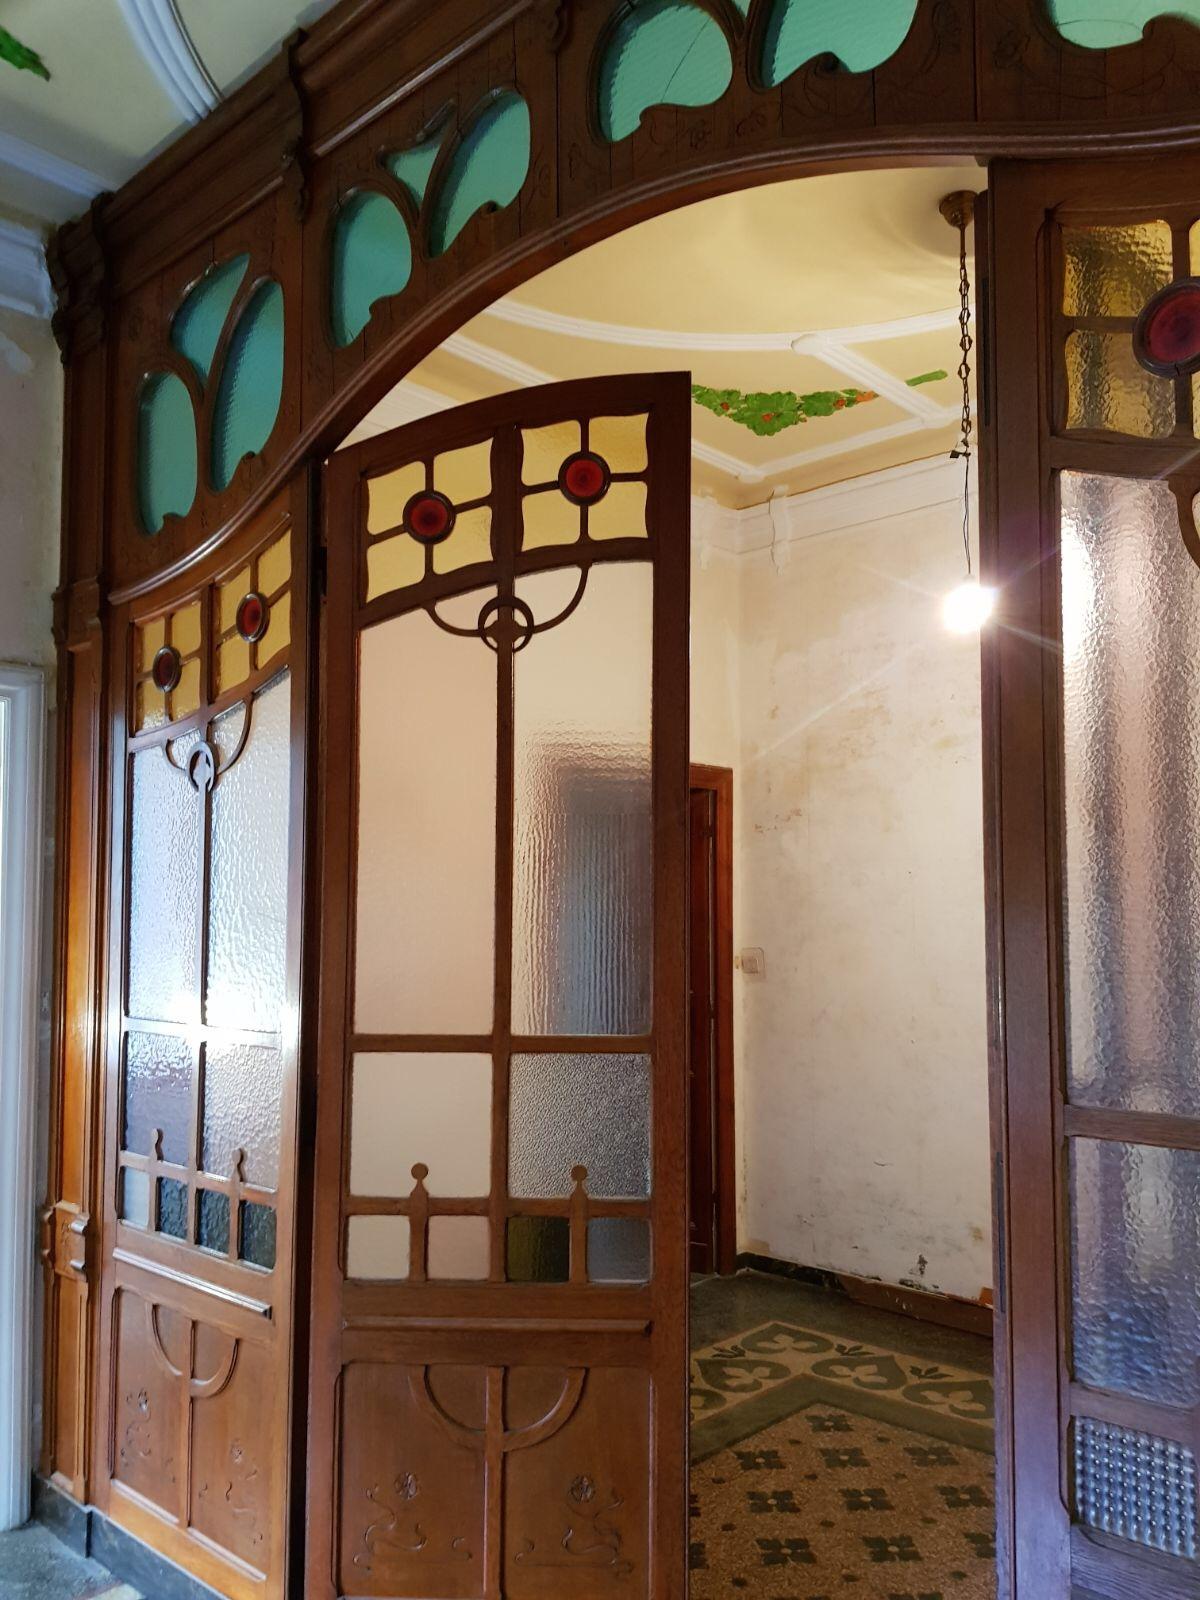 Liberty-Glastür mit Eichenholzrahmen, aus einer italienischen Villa stammend, anpassungsfähig an ein Portal oder zur Unterteilung von Räumen.